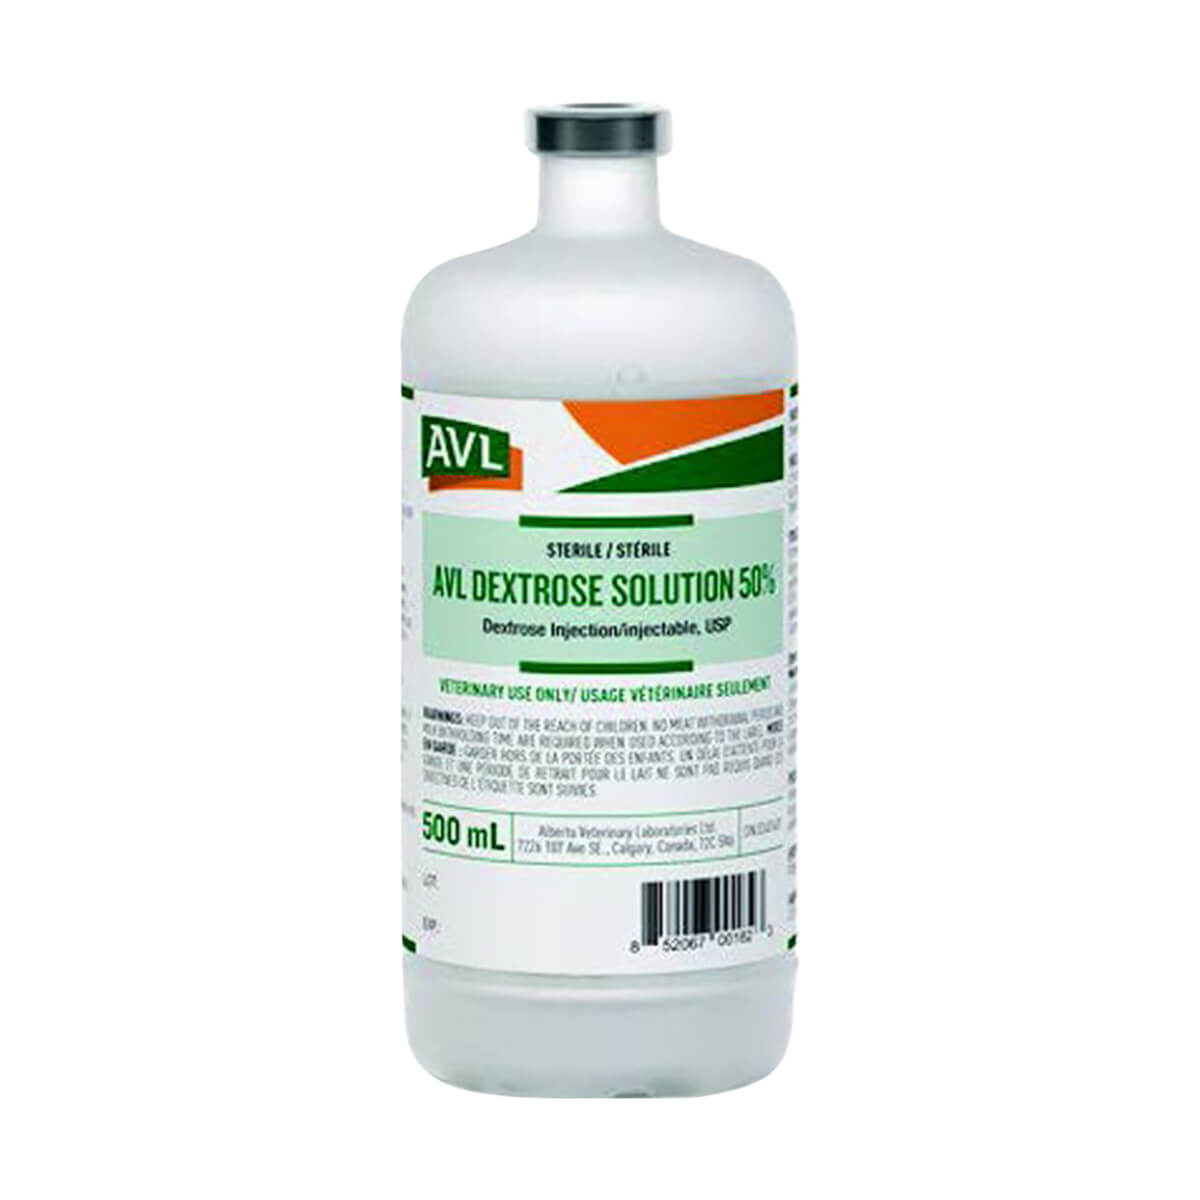 AVL Dextrose Solution 50% - 500 ml